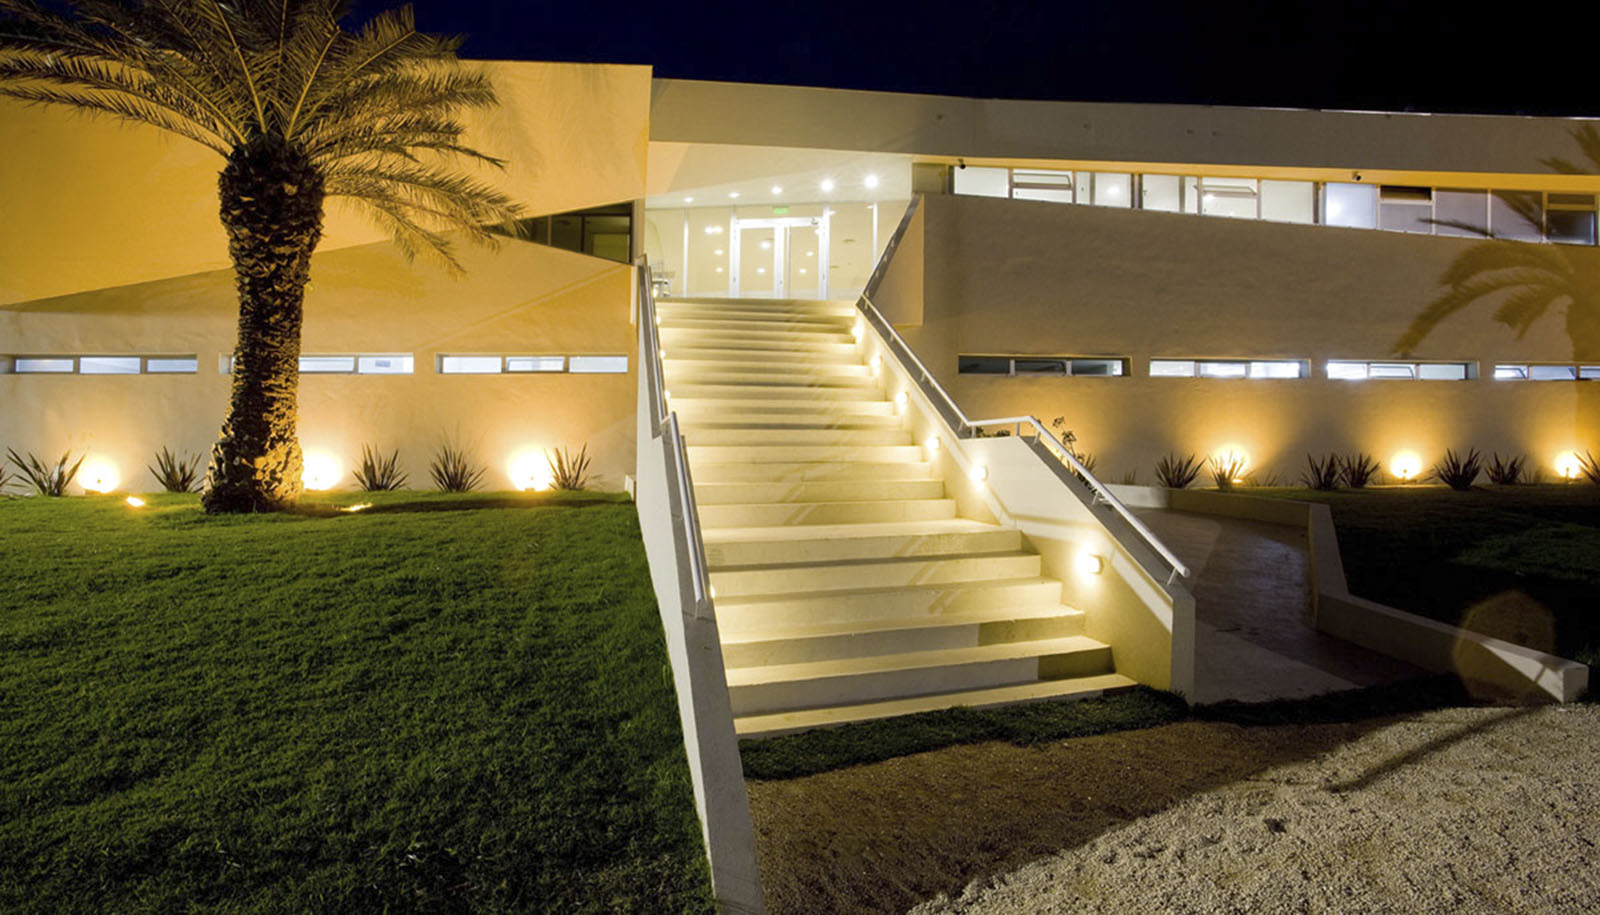 Escaleras modernas, arquitectura plegada, iluminación en arquitectura, complejo deportivo